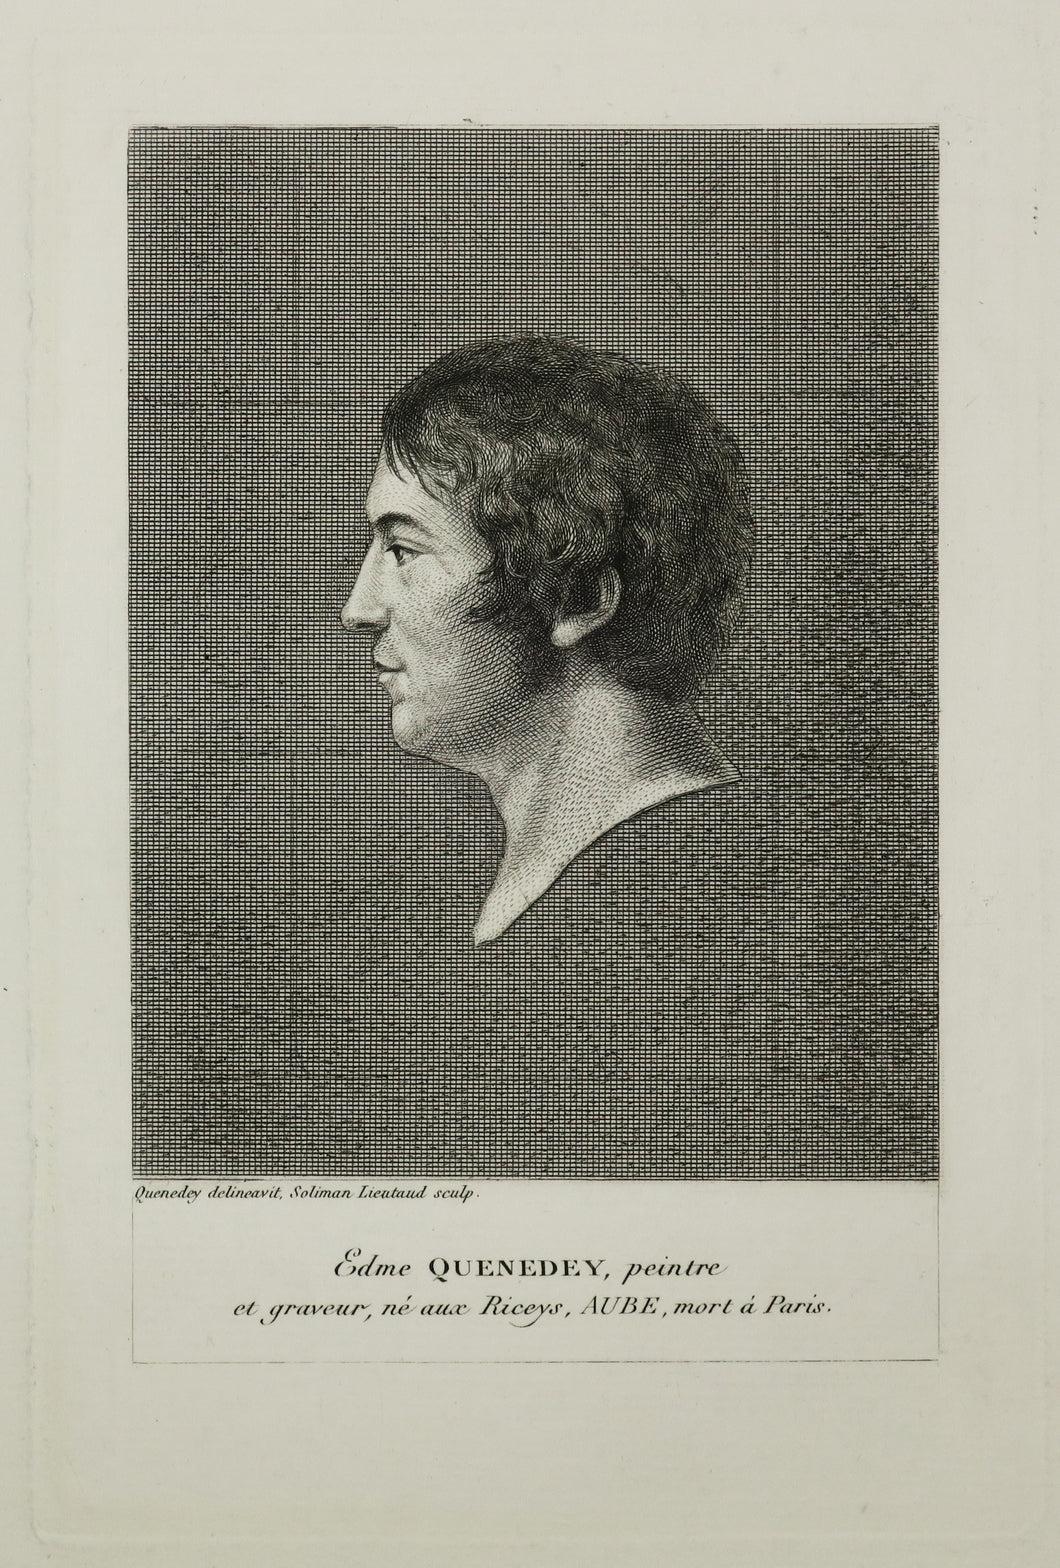 Portrait d'Edme Quenedey (1756-1830), peintre et graveur, né aux Riceys, Aube, mort à Paris.